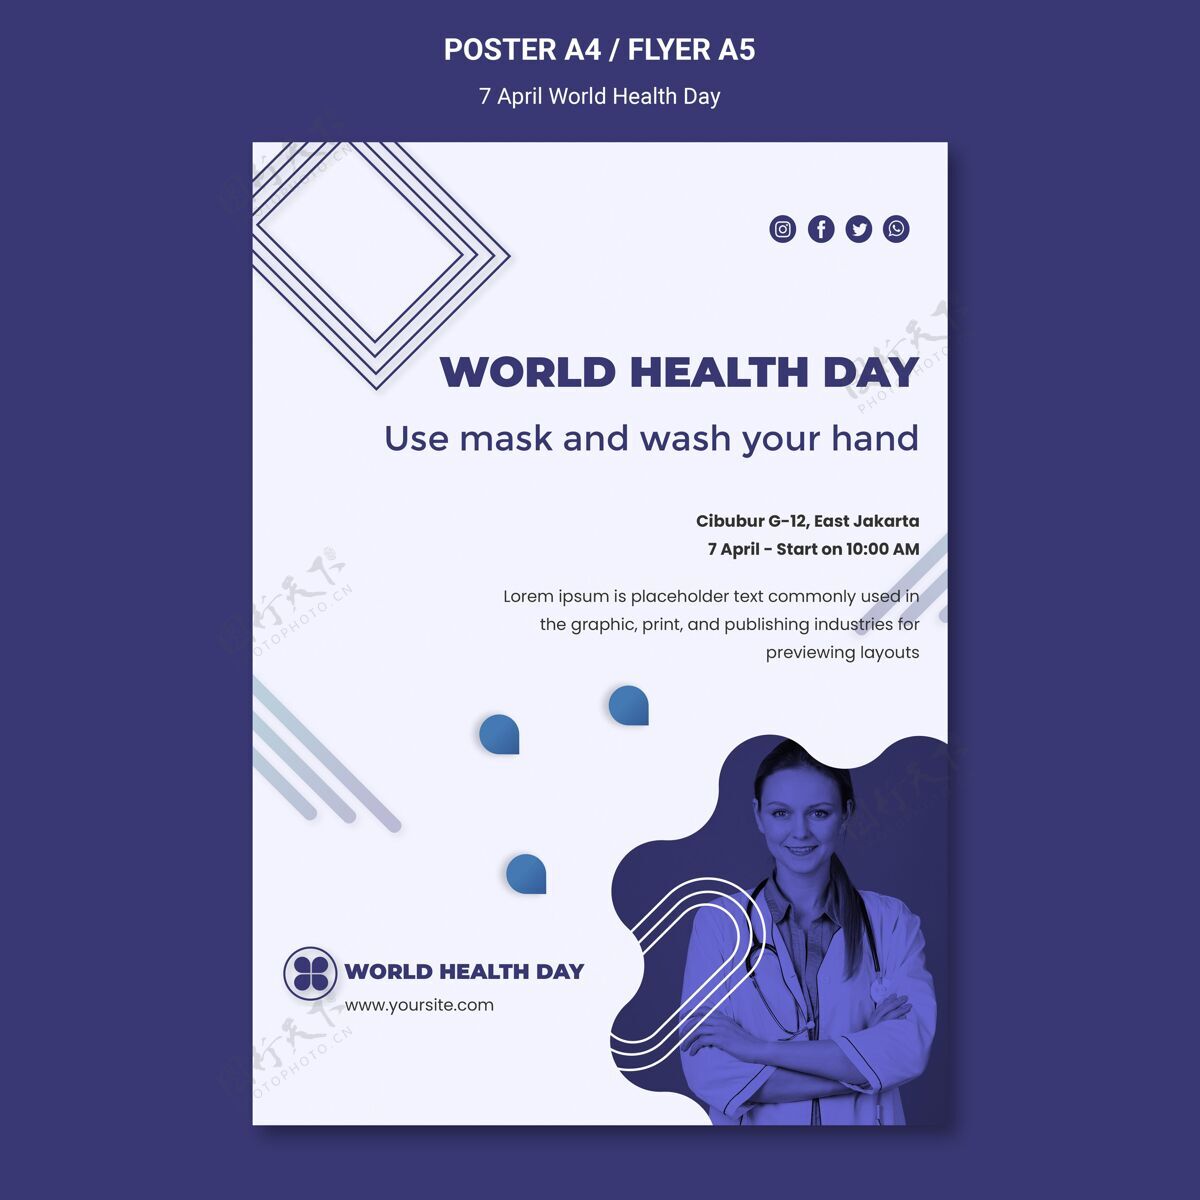 医学世界卫生日海报模板海报健康医疗